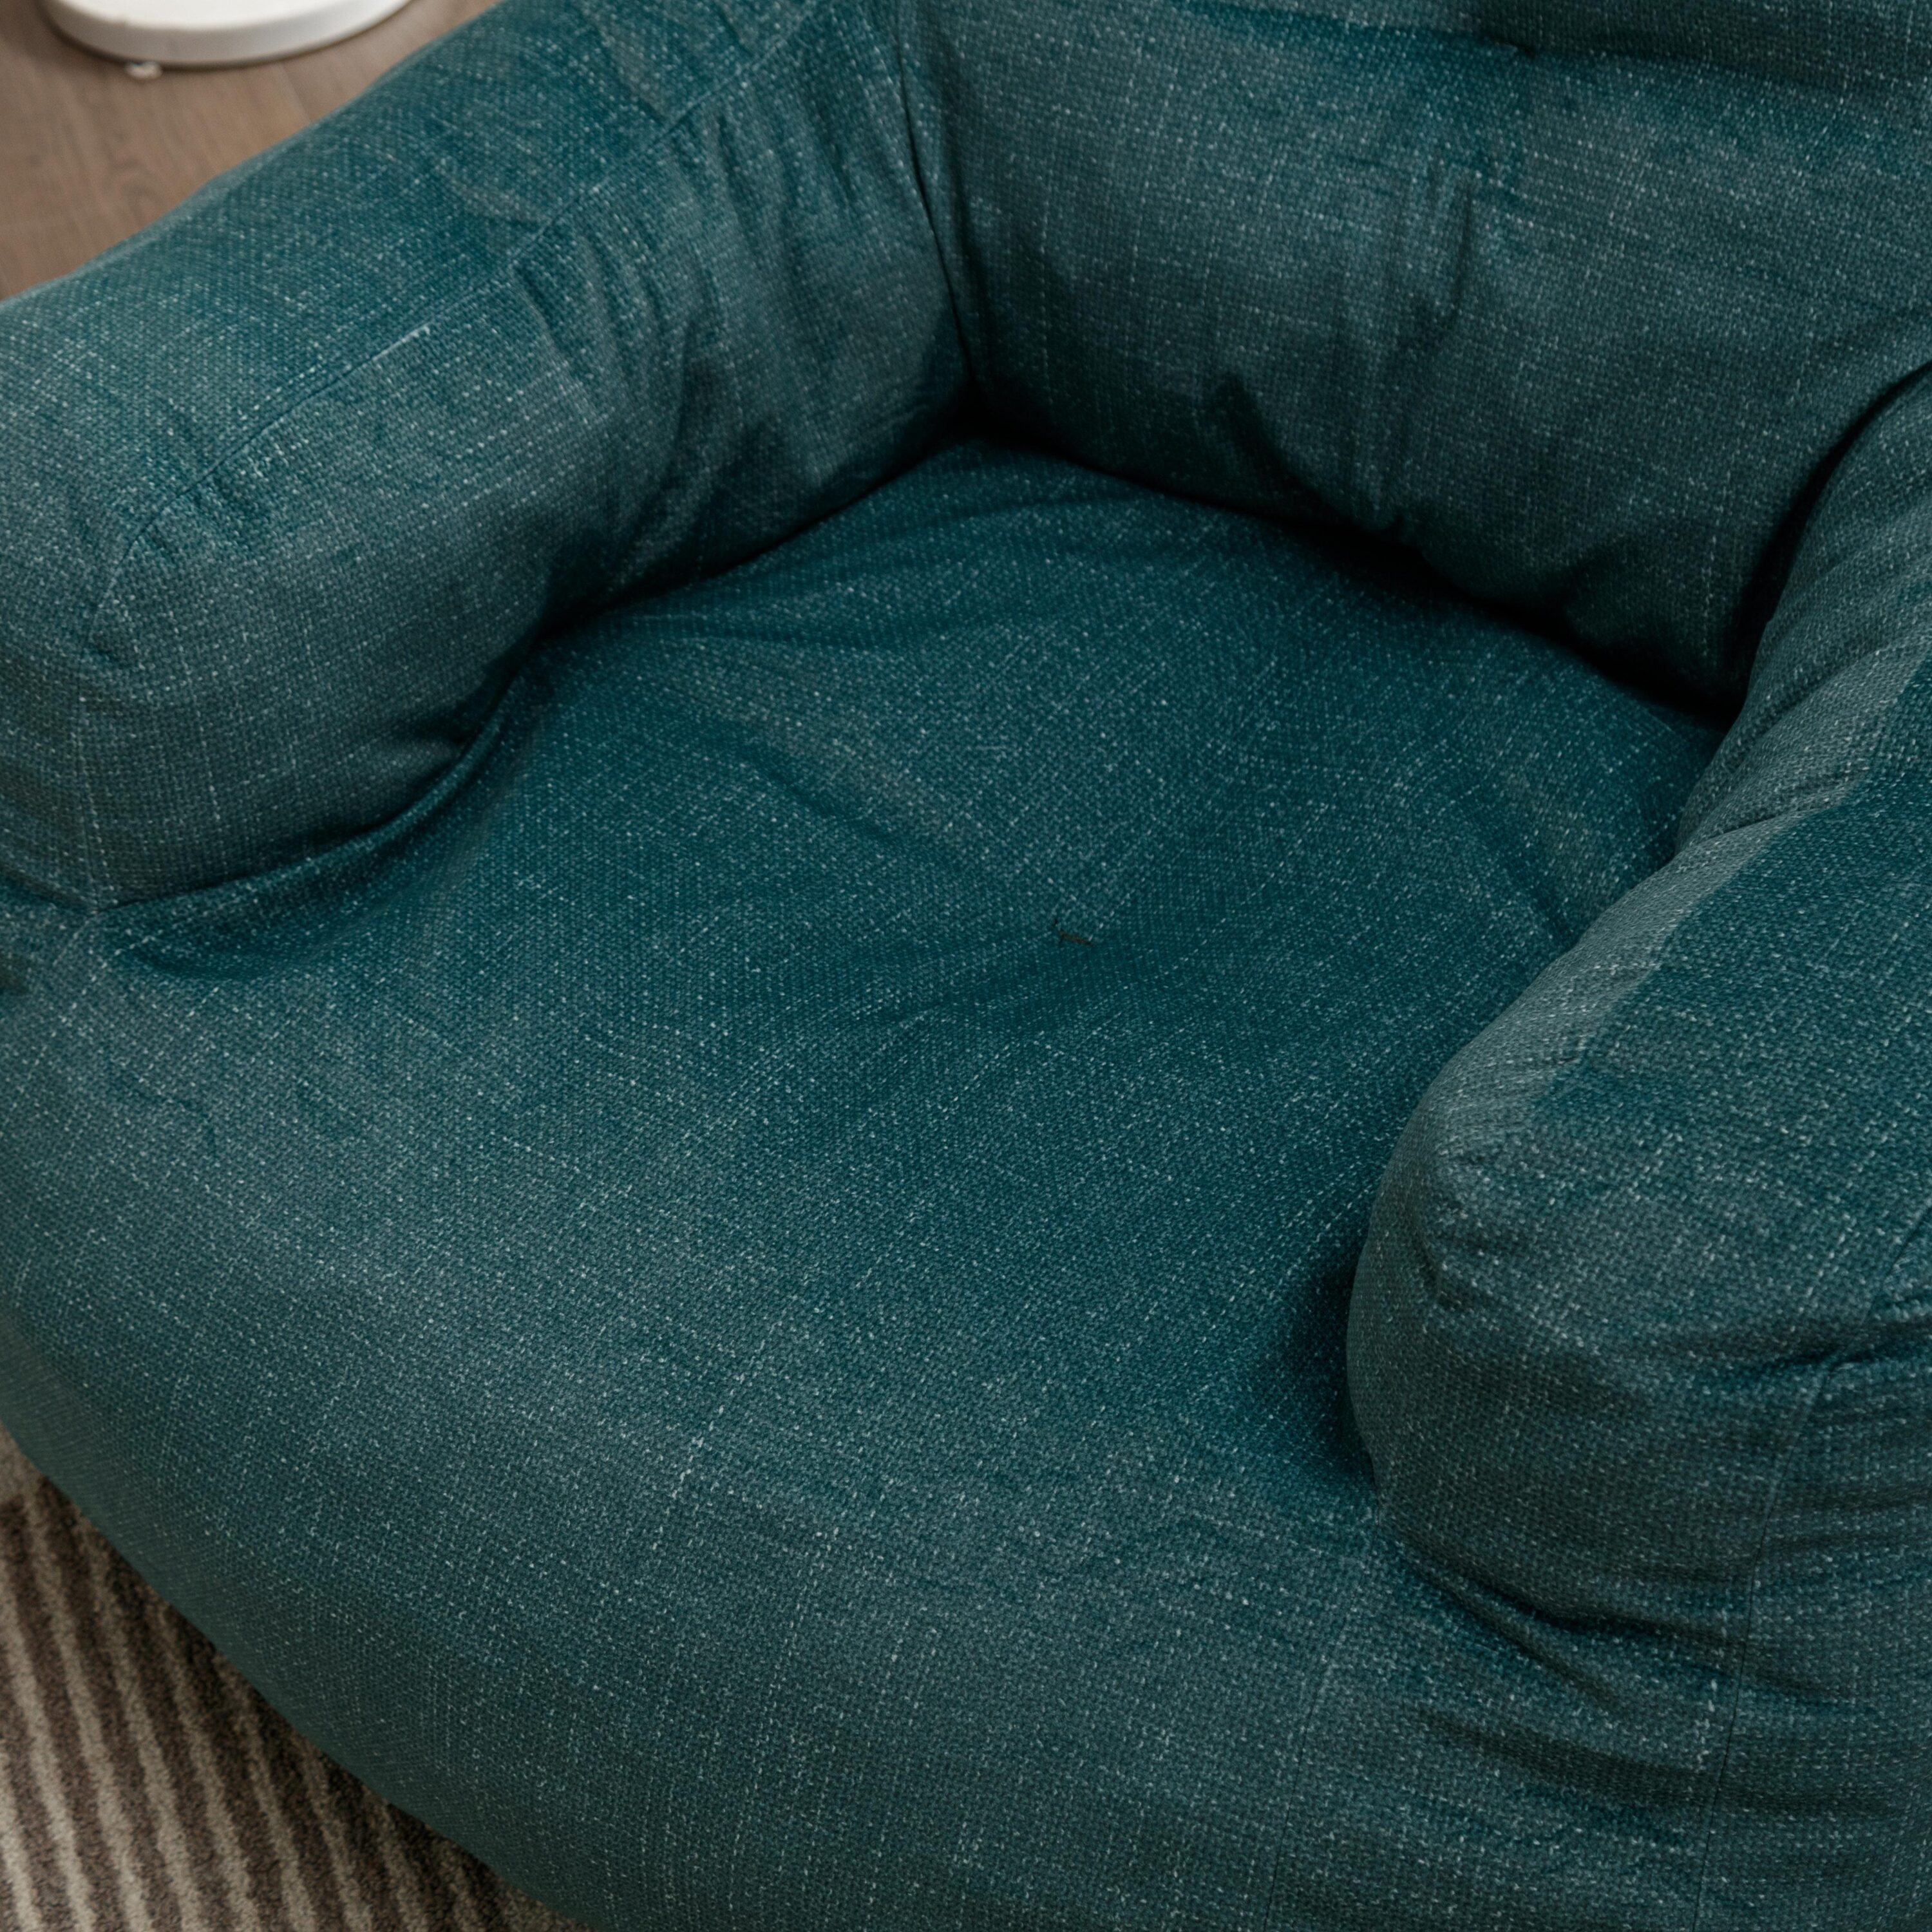 37 in. W x 39.37 in. D x 27.56 in. H Dark Gray Soft Cotton Linen Fabric  Bean Bag Chair